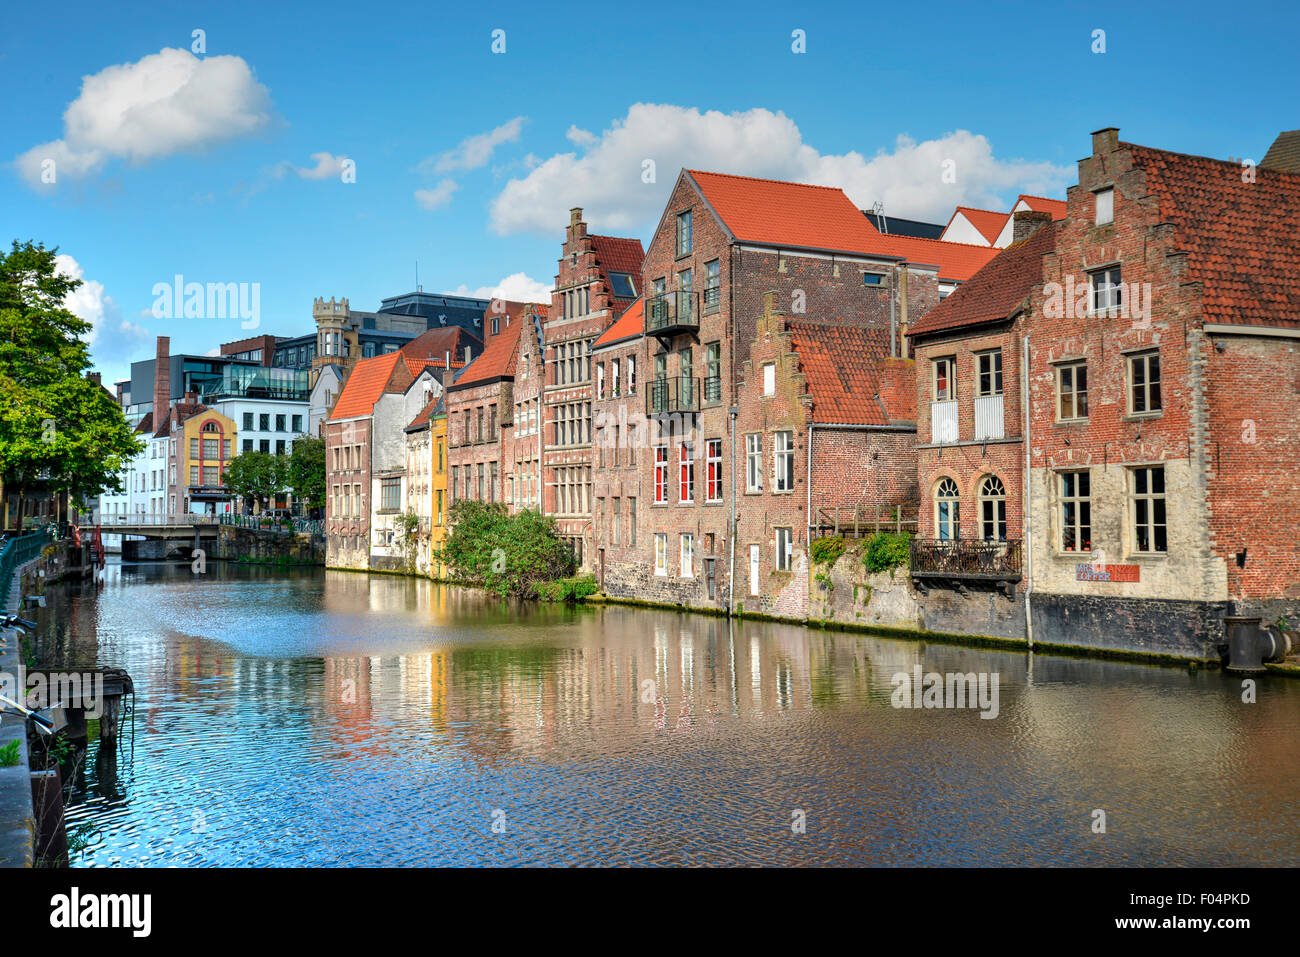 Belle vue de bâtiments anciens avec un ciel bleu et nuages blancs à Gand, Belgique Banque D'Images